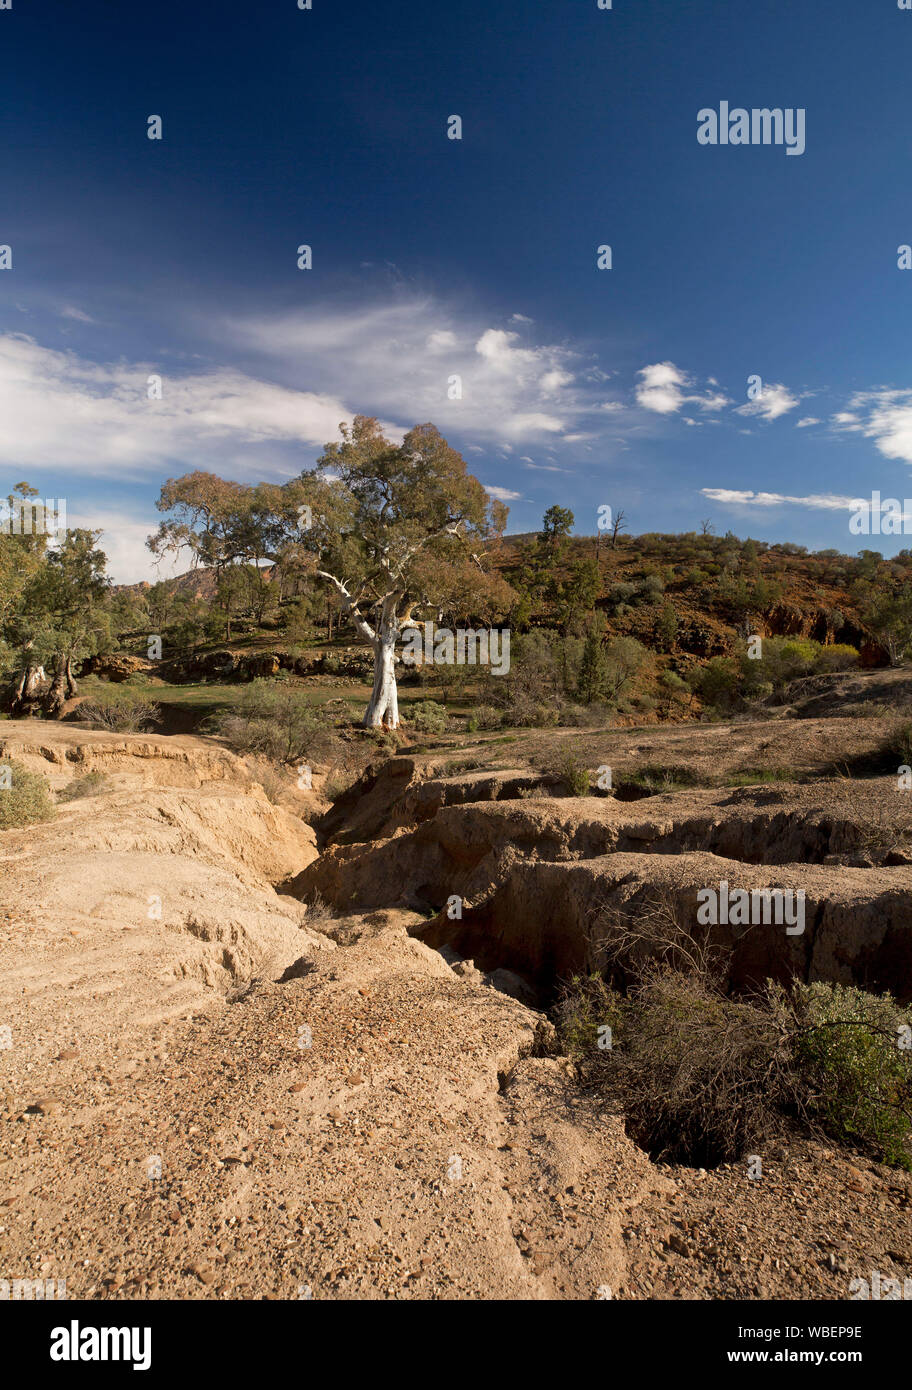 Paysage avec profondeur et fissures béantes sur le sol au pied de collines de faible altitude en raison de l'érosion par l'eau, le parc national de Flinders en Australie Banque D'Images